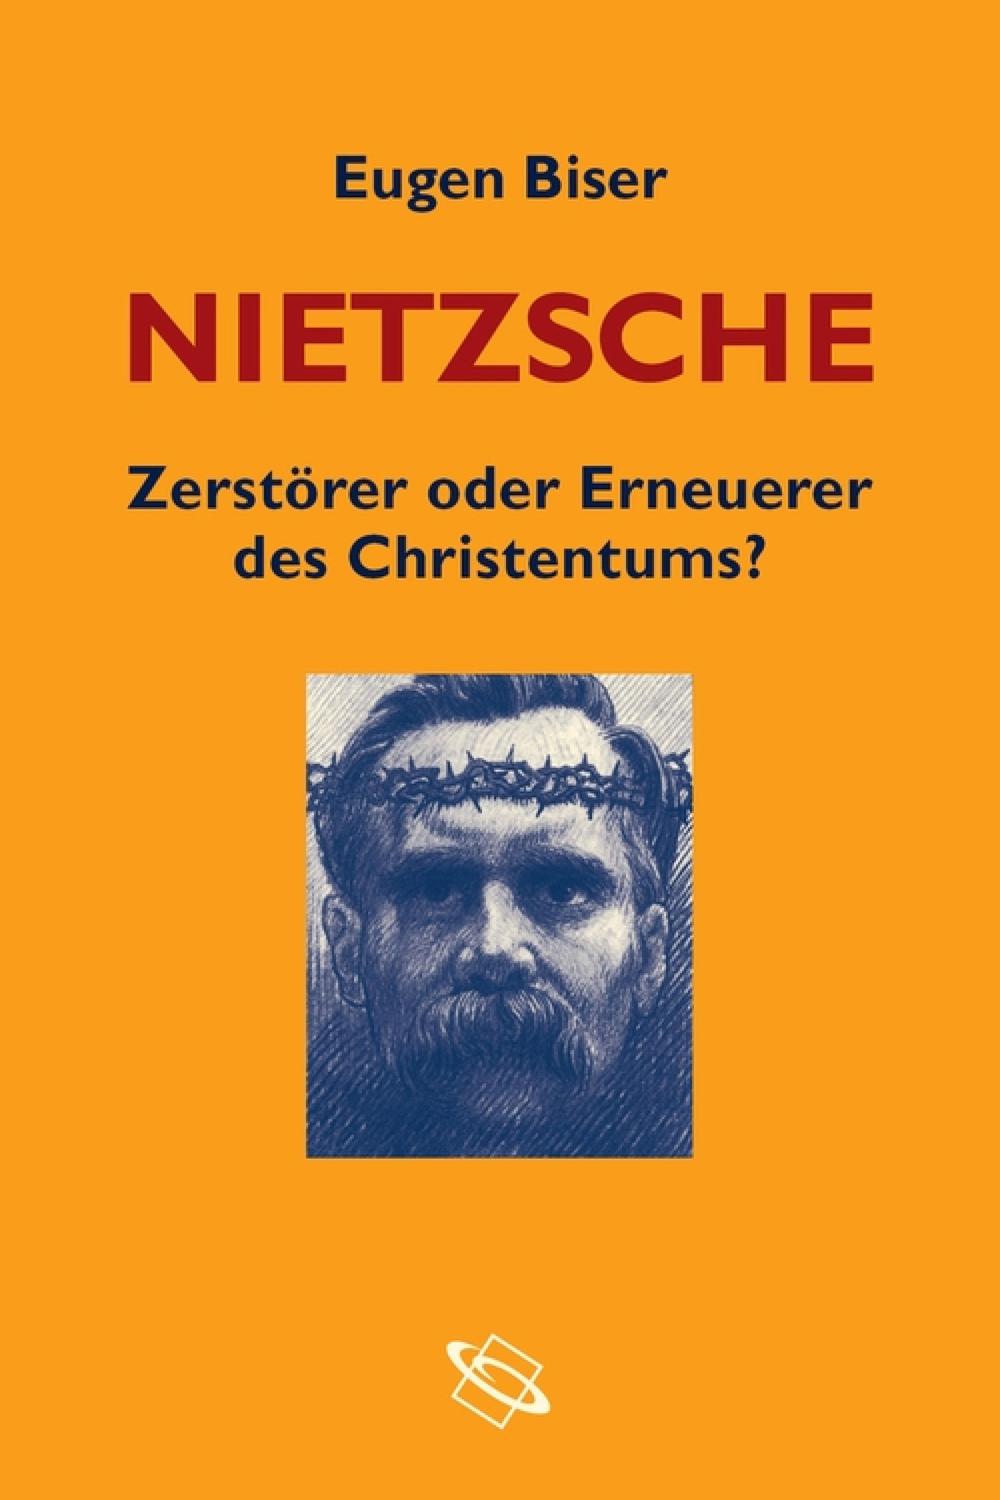 Nietzsche - Zerstörer oder Erneuerer des Christentums? - Eugen Biser